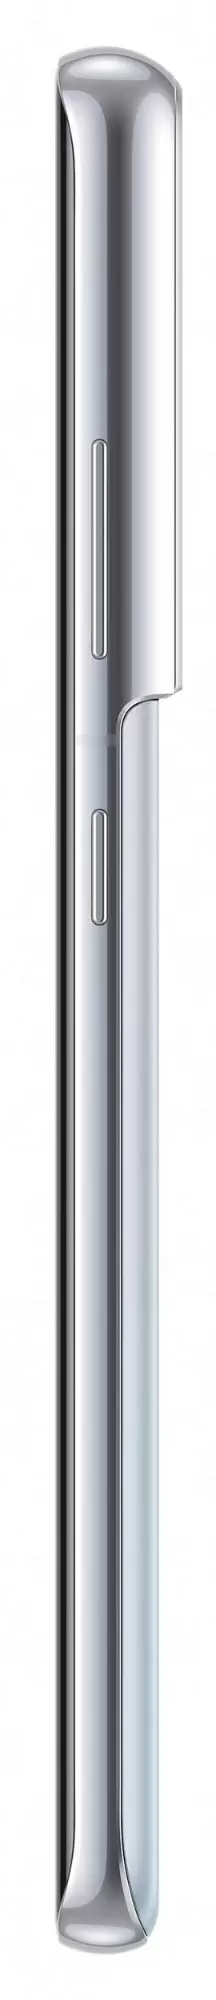 Смартфон Samsung SM-G998 Galaxy S21 Ultra 128GB, серебристый фантом